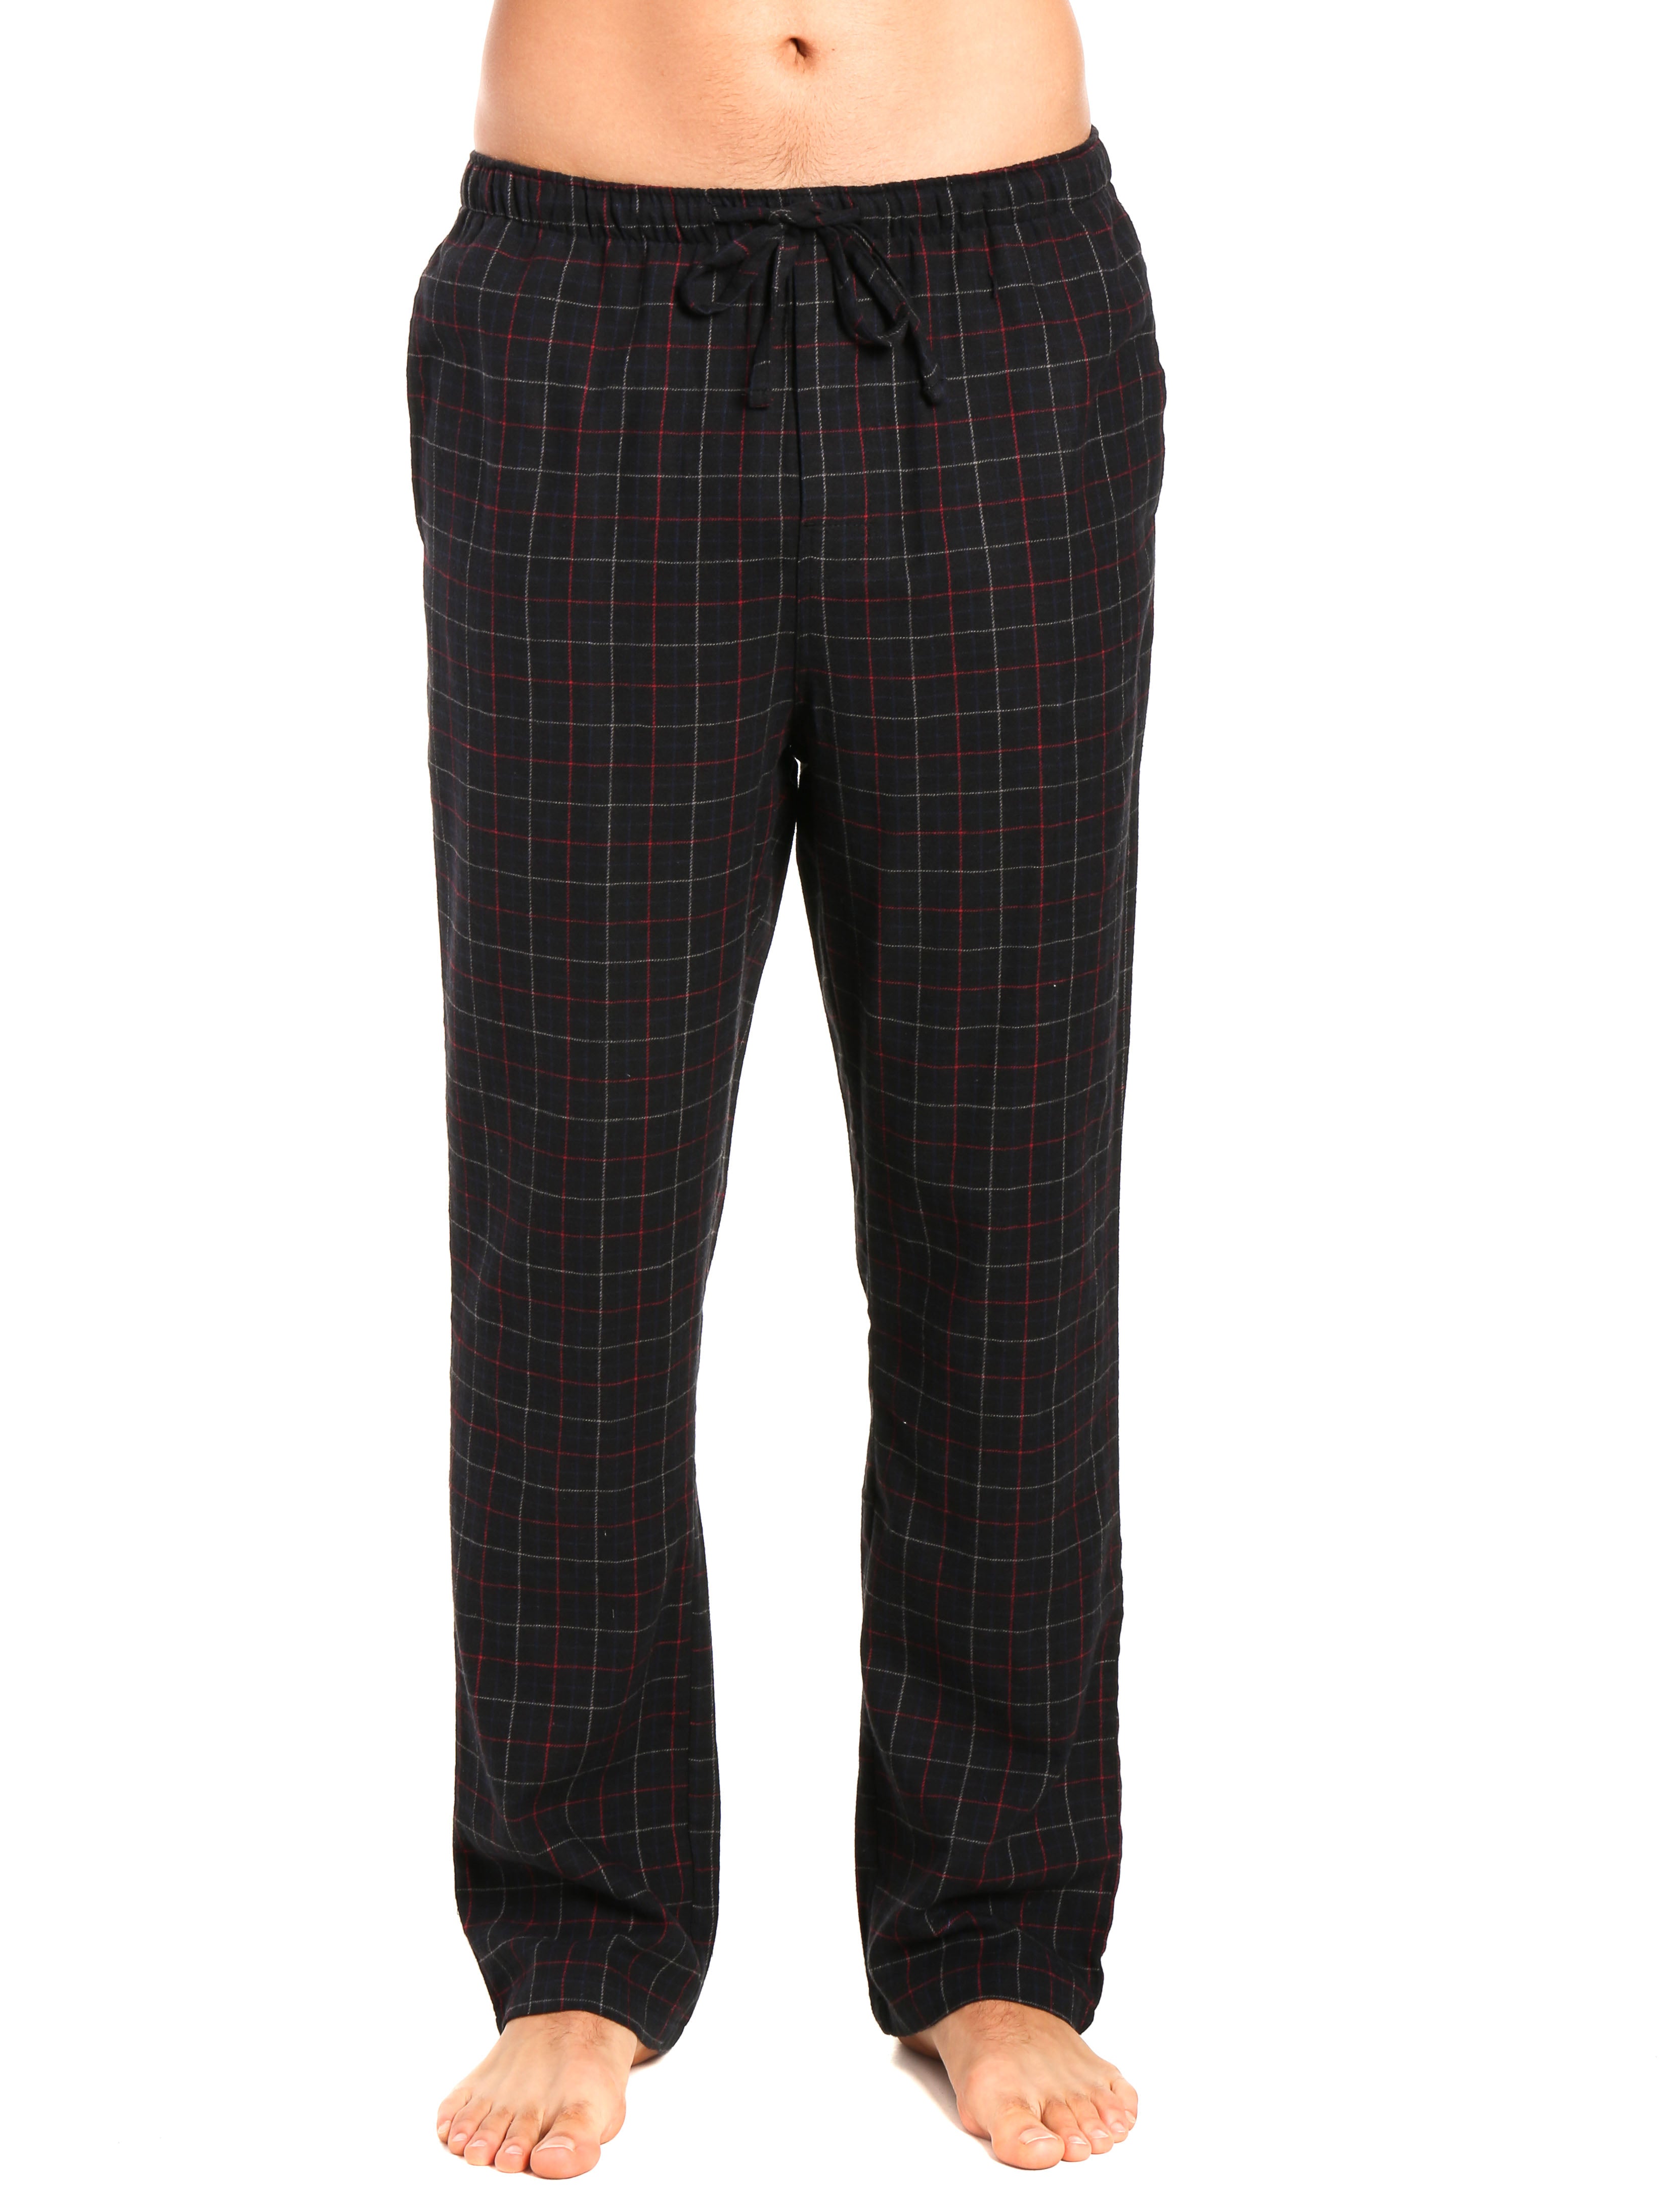 Men's 100% Cotton Flannel Lounge Pants - Plaid Black-Multi